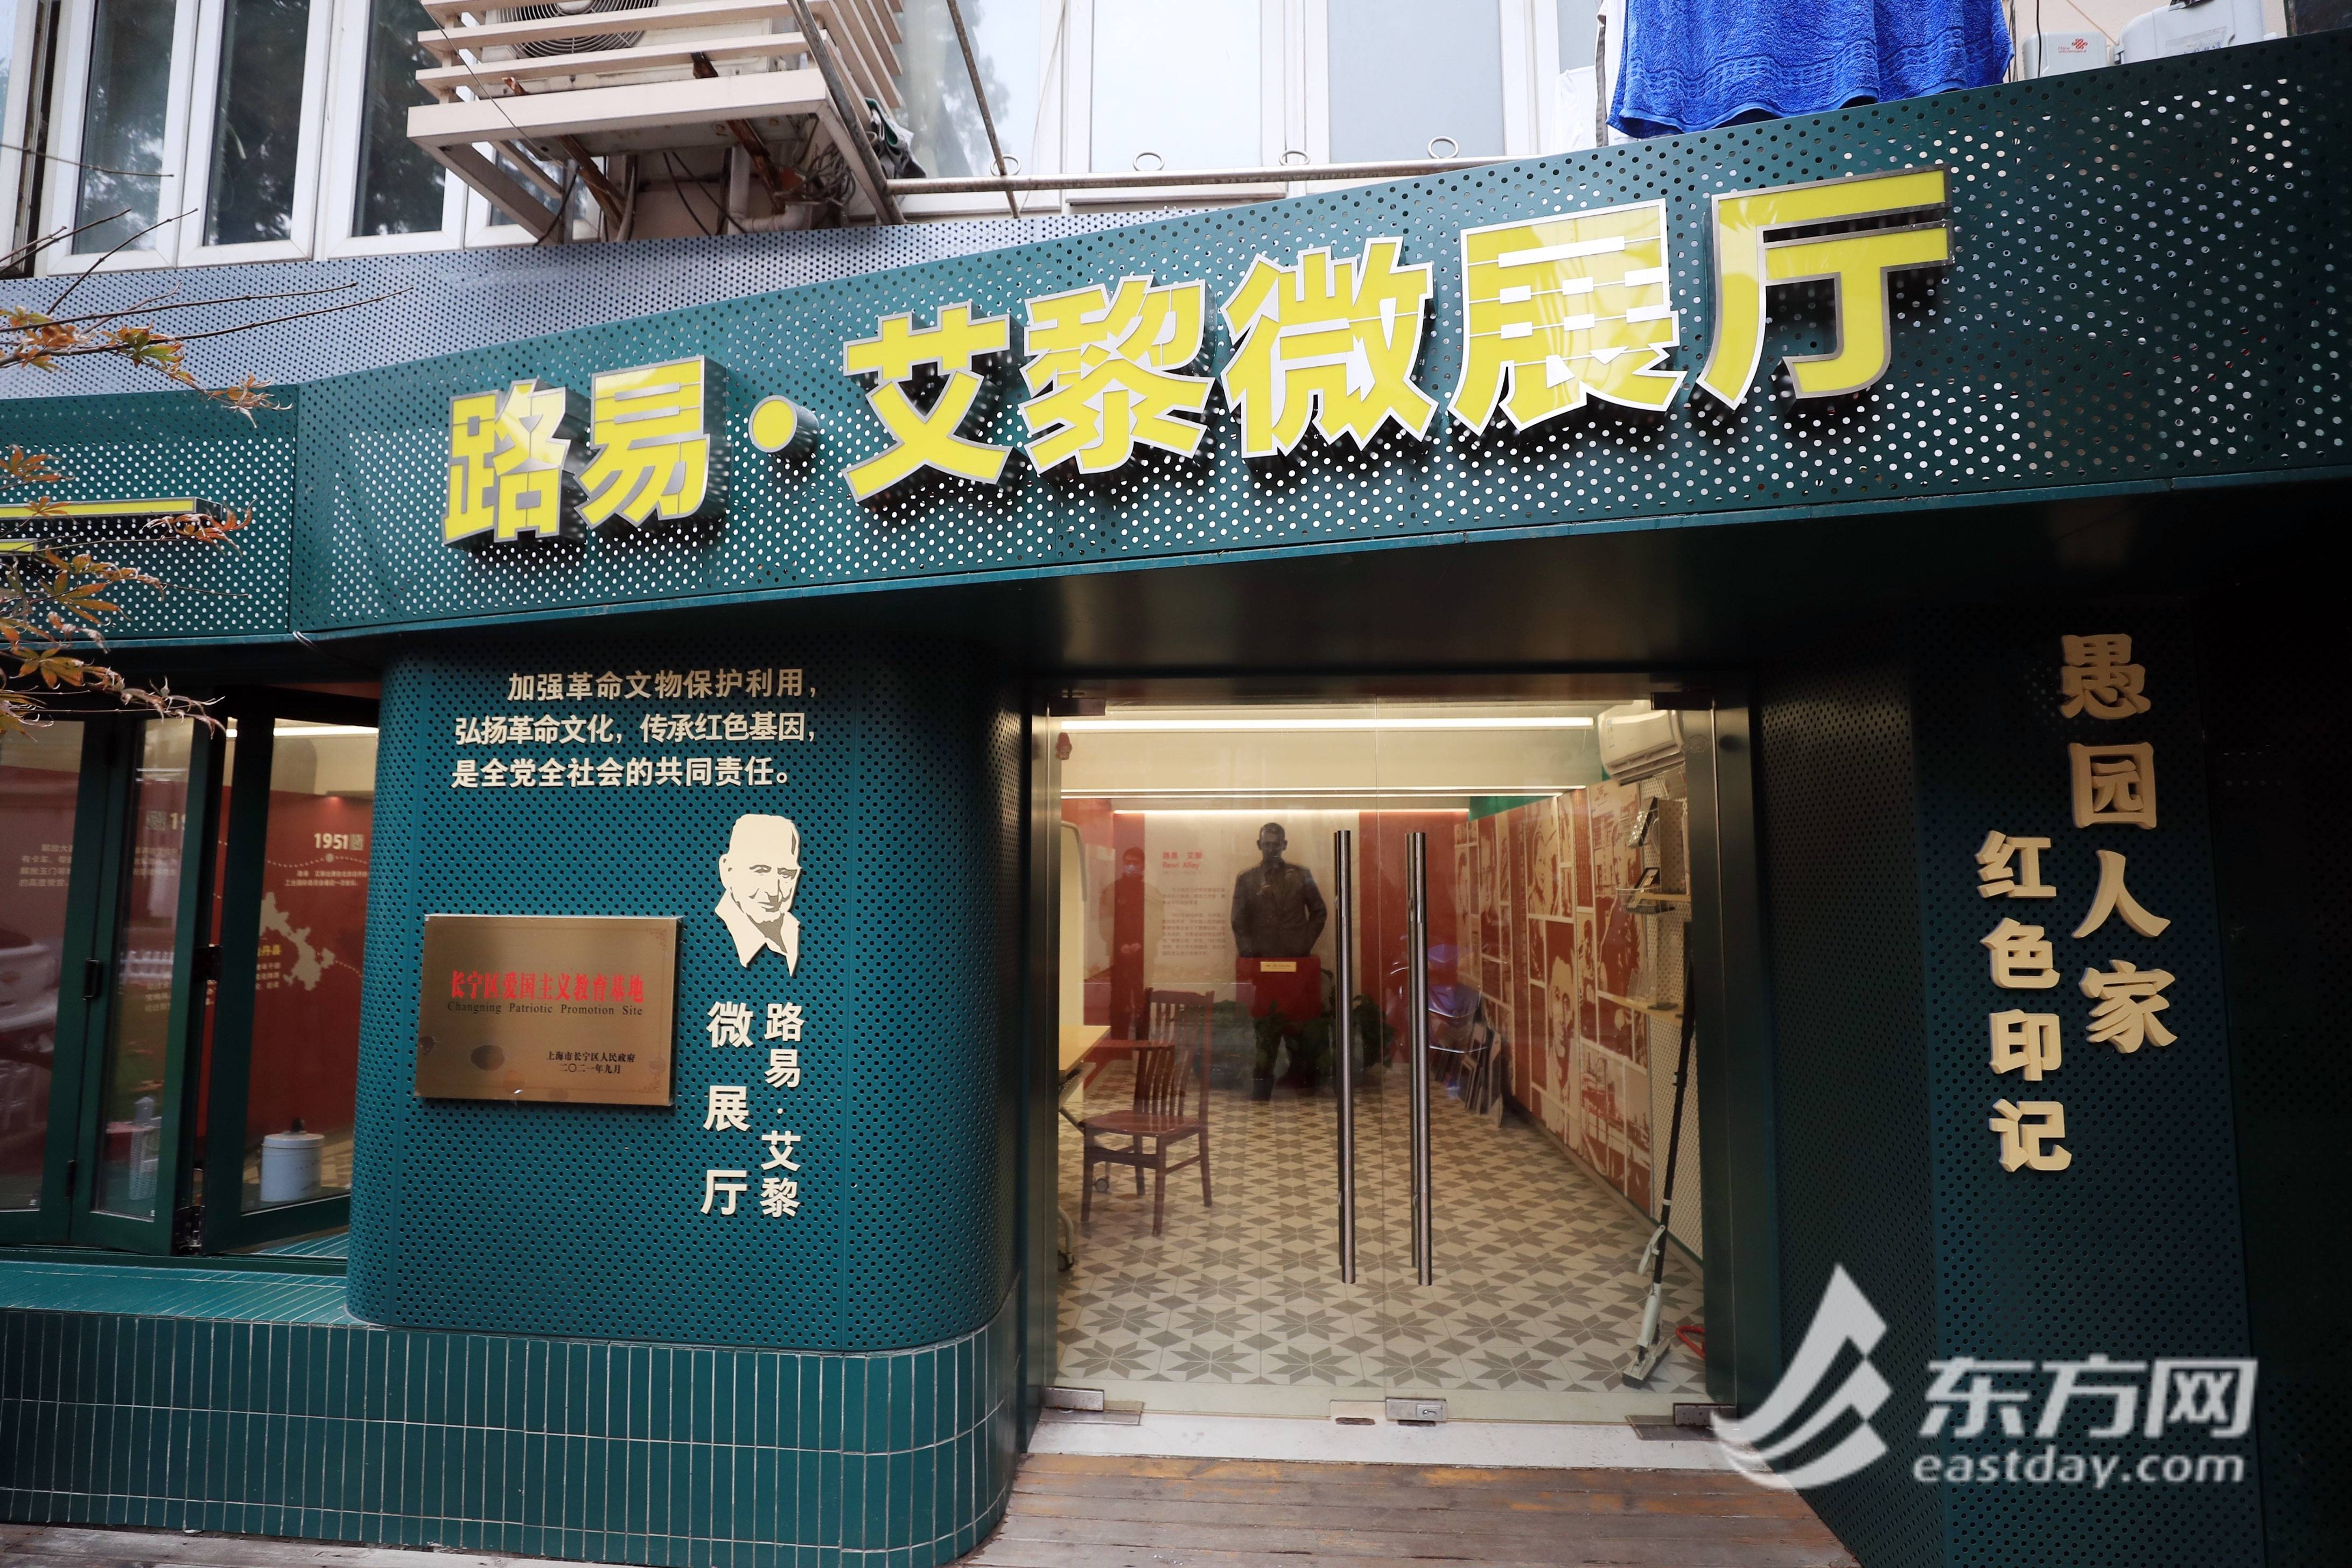 【文化旅游】上海愚园路上国际主义战士路易·艾黎故居正式对外开放